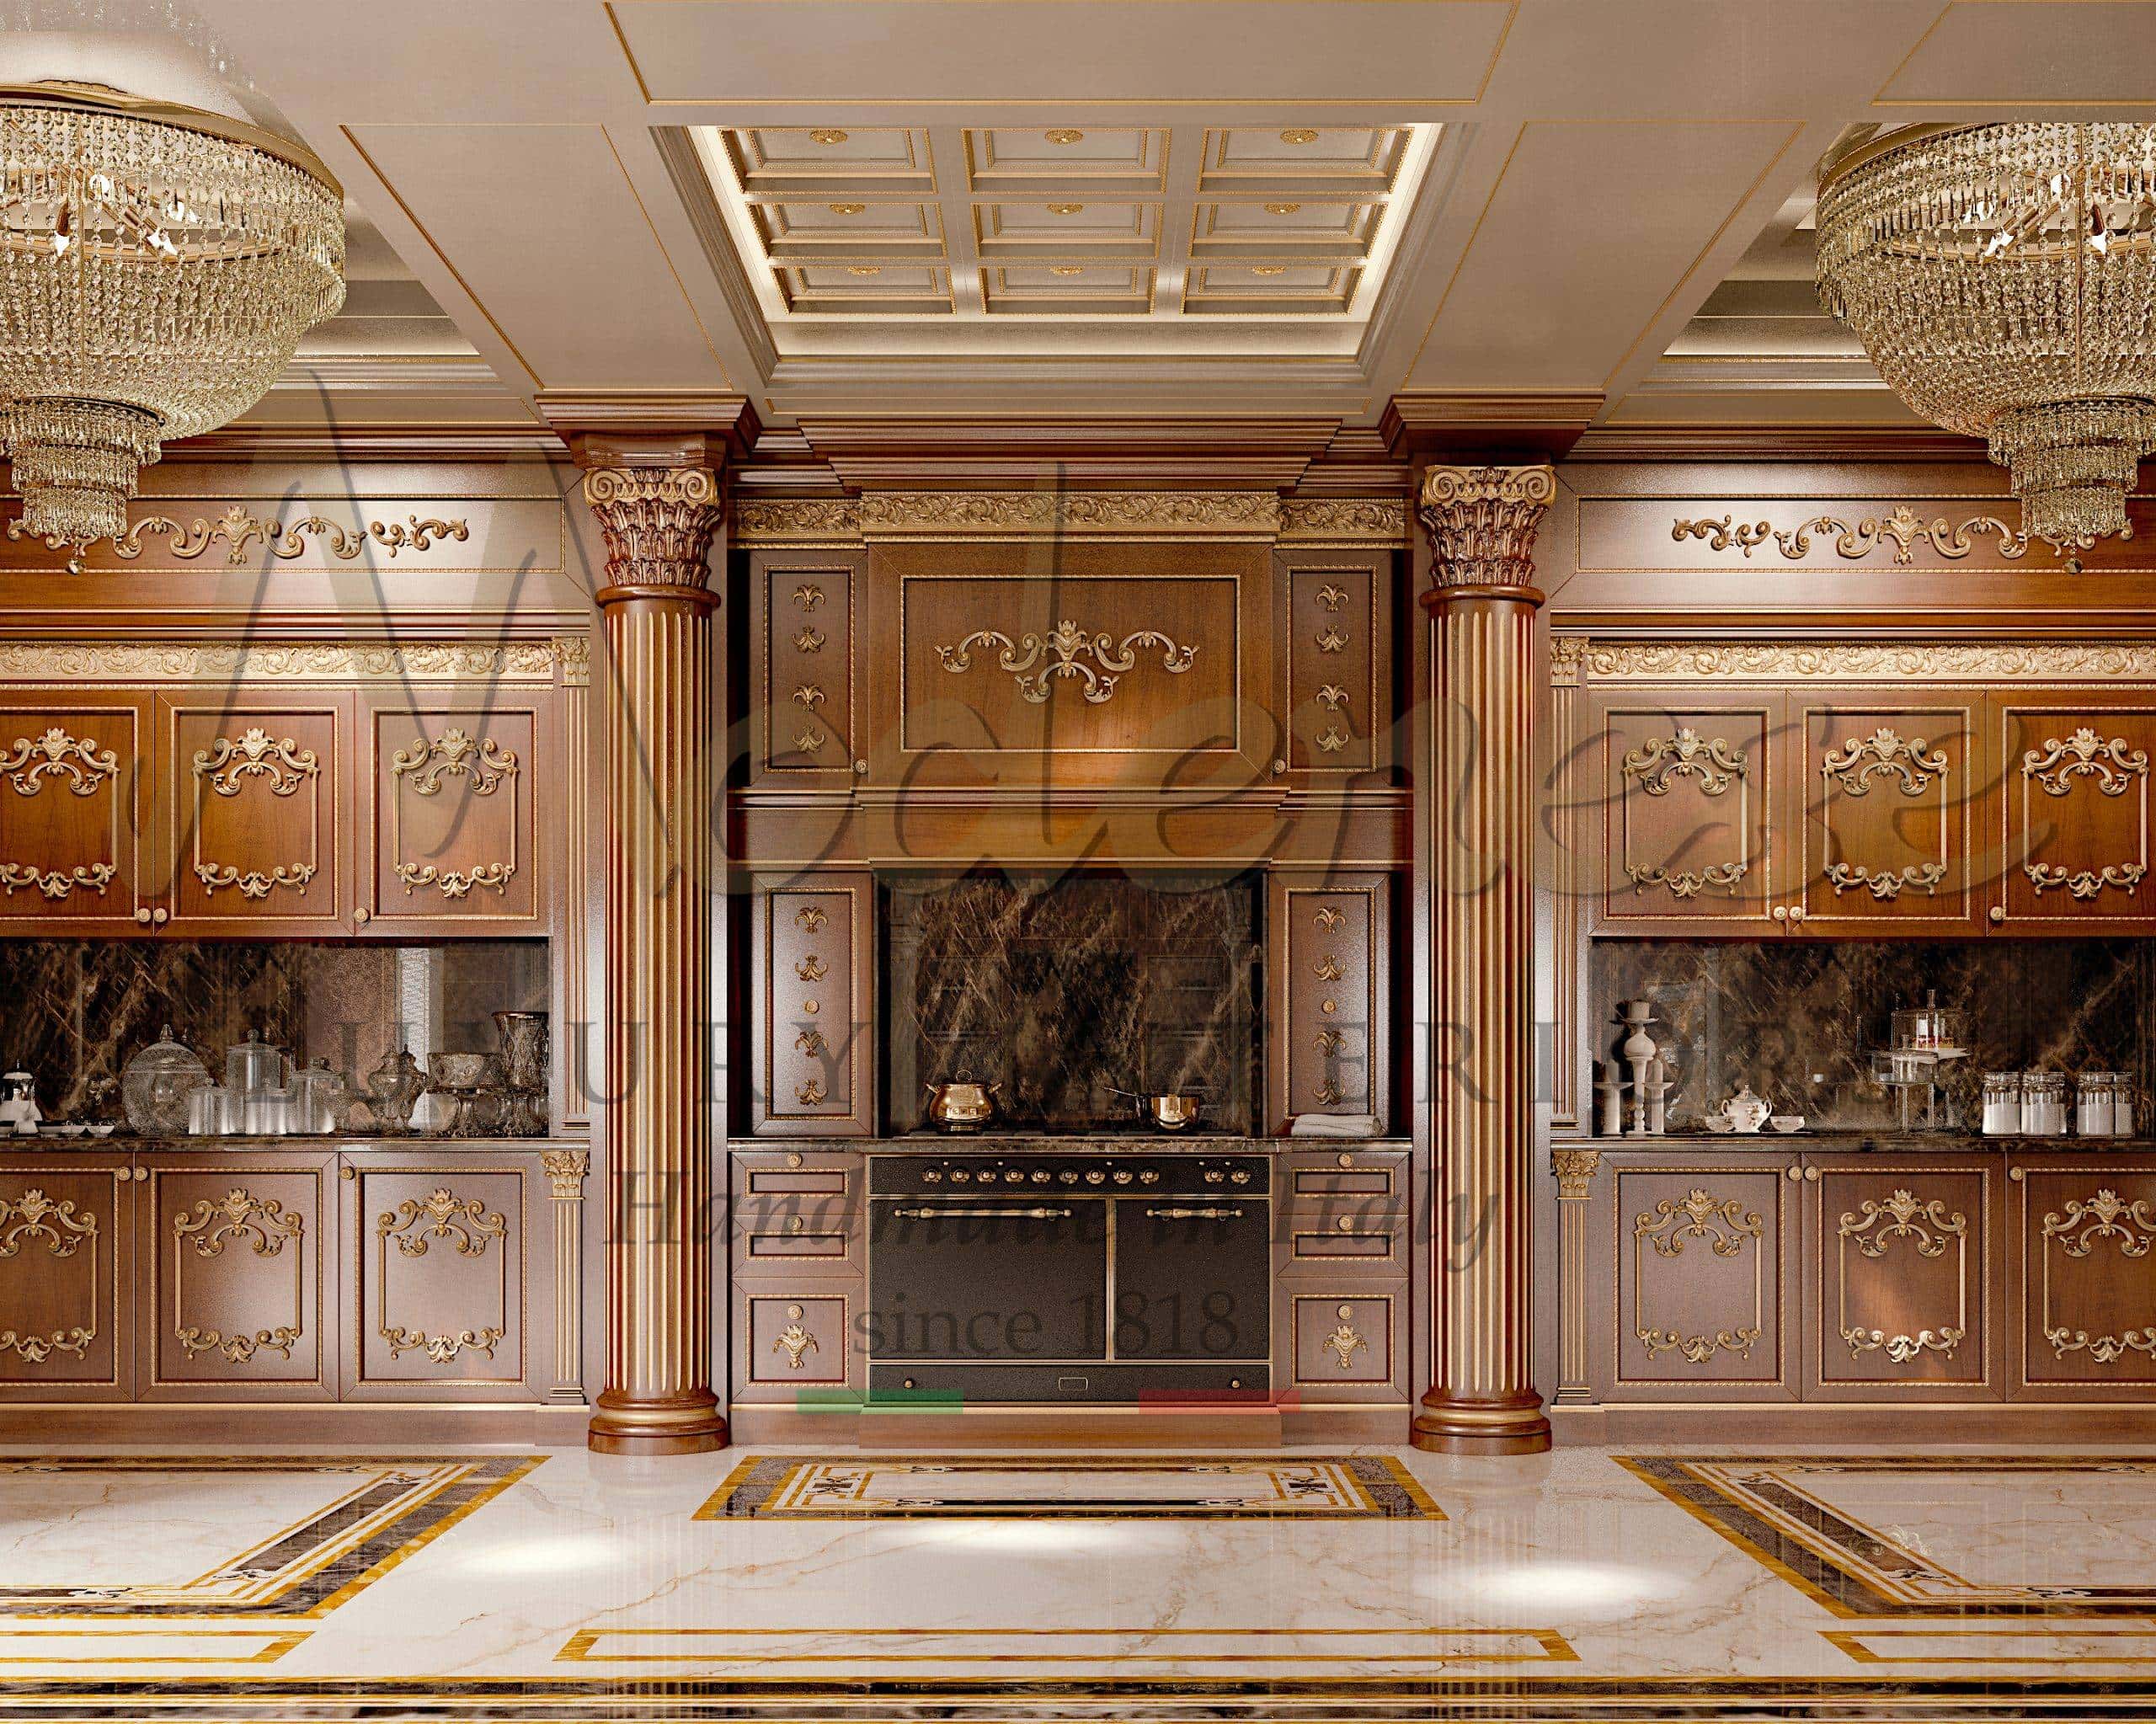 interiérový design na zakázku kuchyňský projekt královský klasický luxusní francouzský styl italský vkus vyrobeno v Itálii ruční ýroba ruční práce elegantní dekorace vybavení exkluzivní pevný nábyte